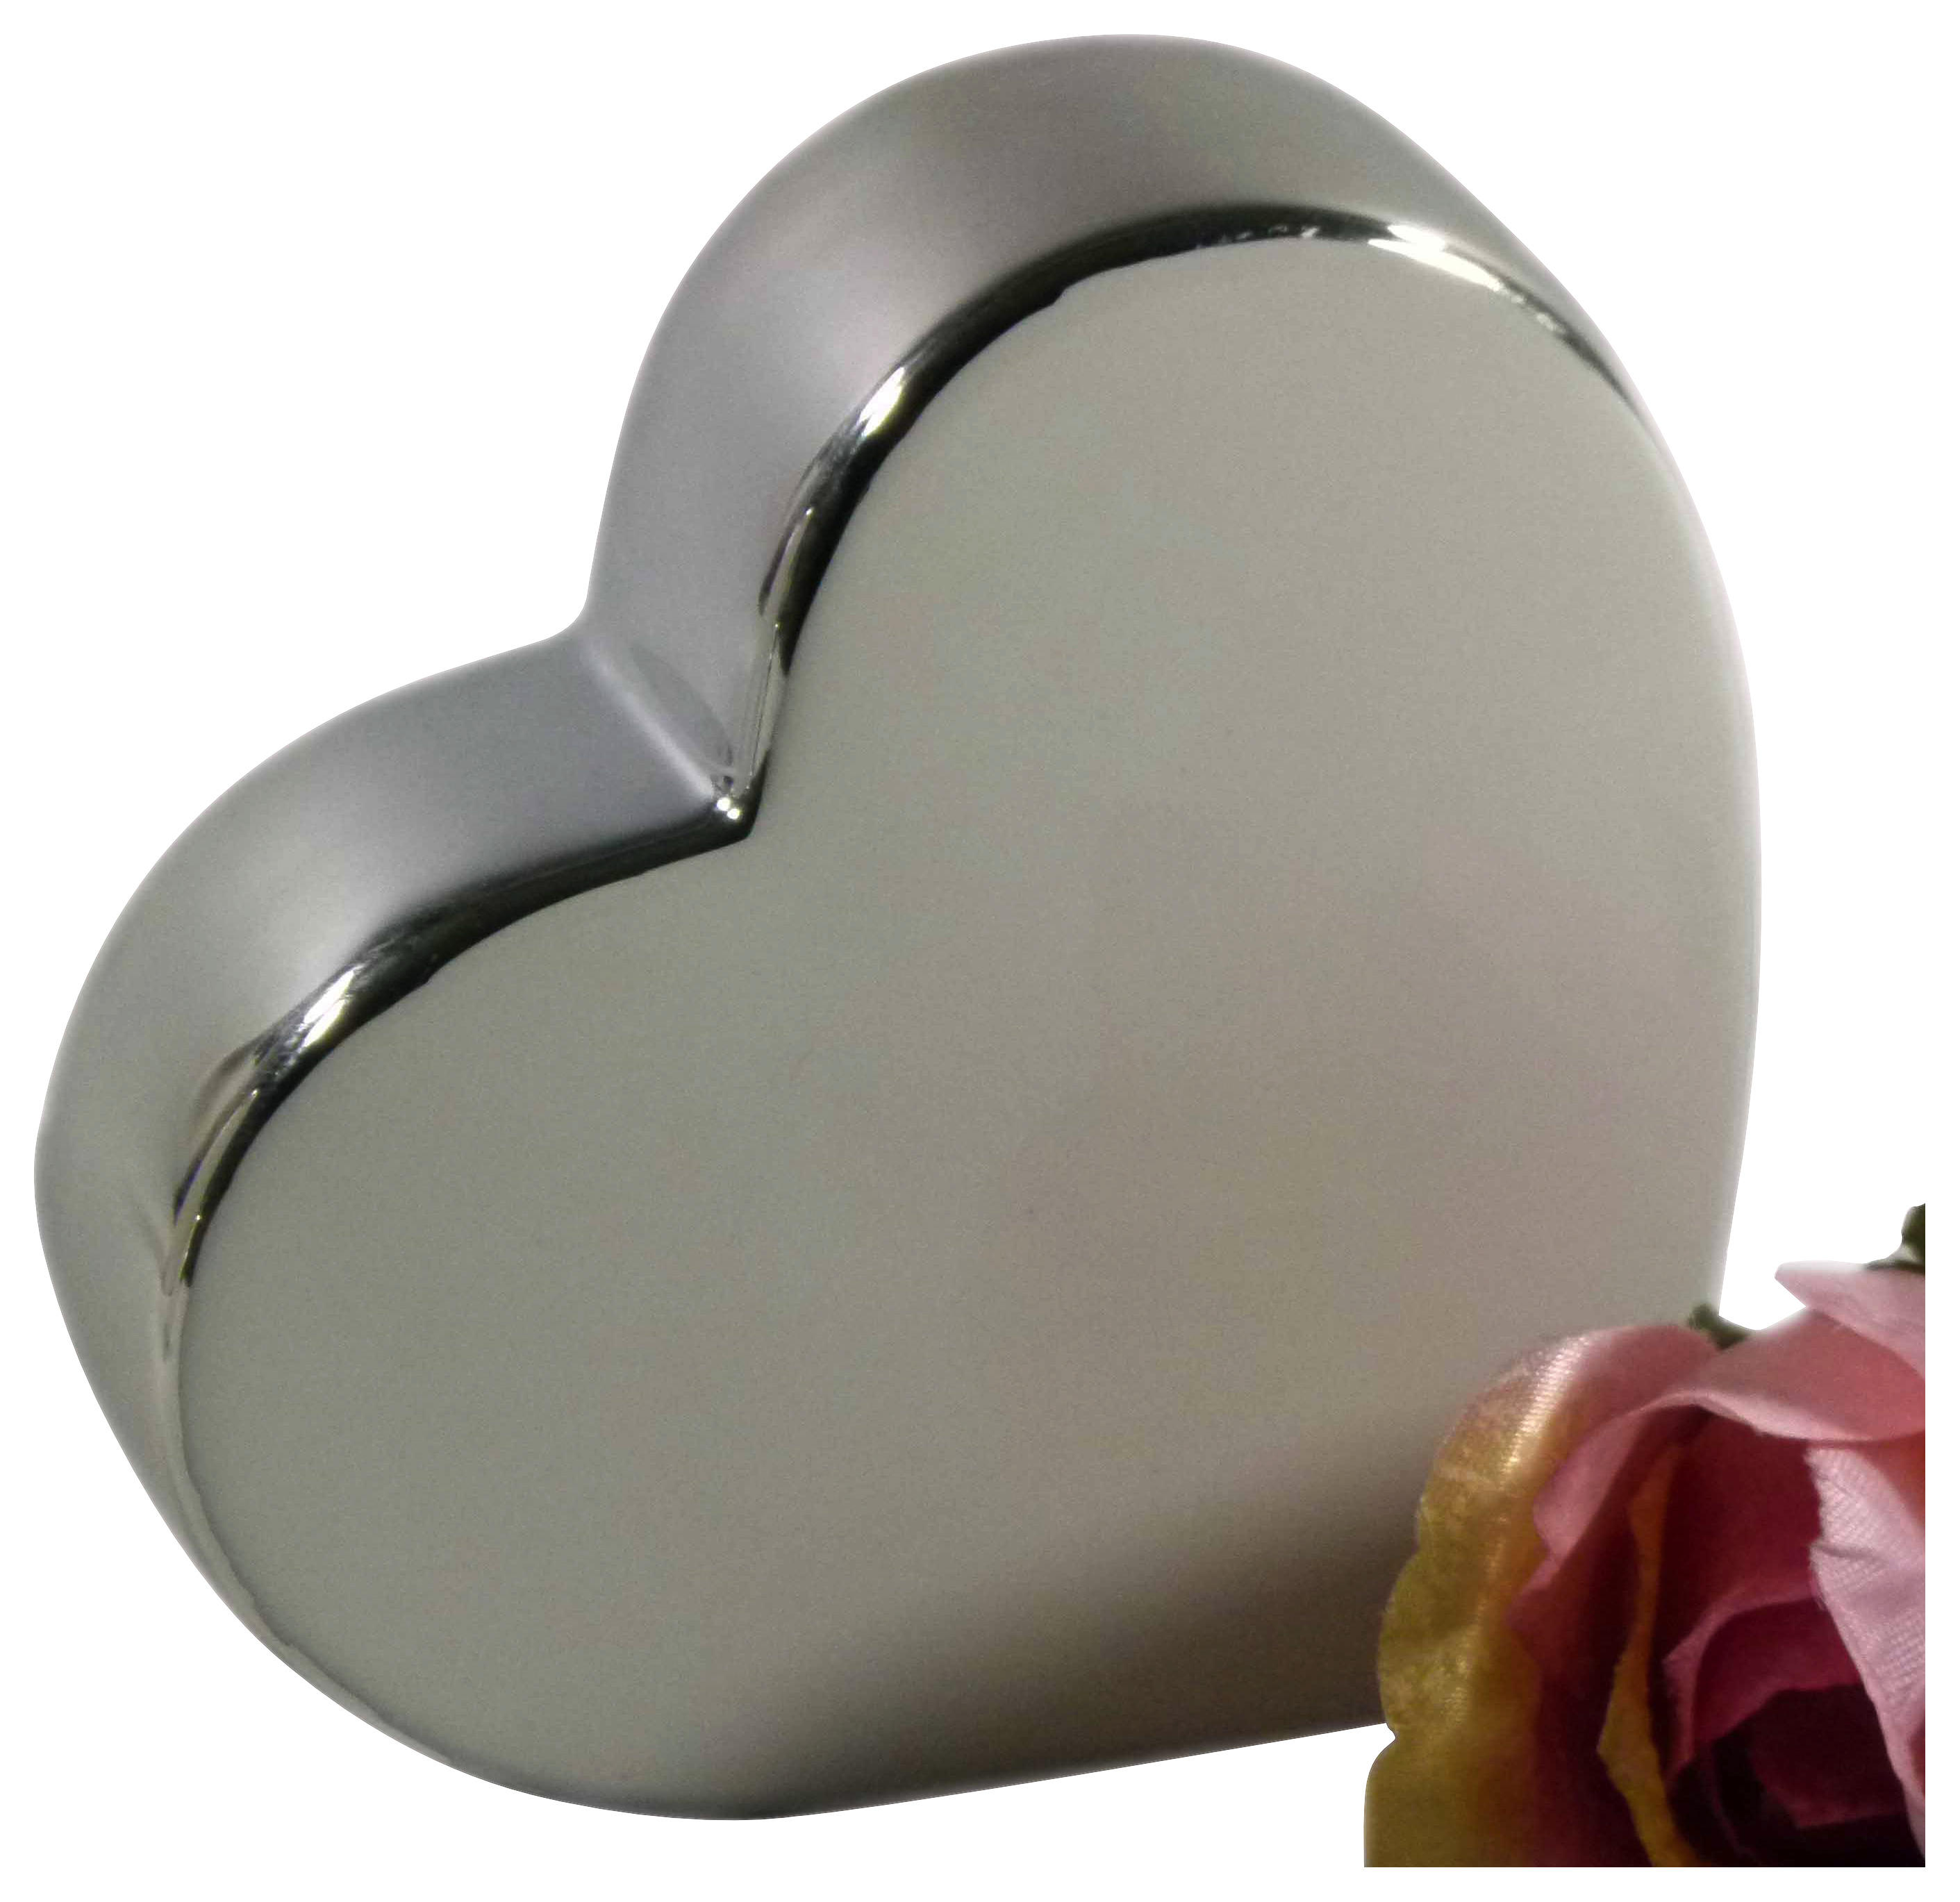 Deko in Herzform auch als Geschenk geeignet modernes Dekoherz 17 cm groß in Weiß & Silber FeinKnick Stilvolles Herz zur Dekoration